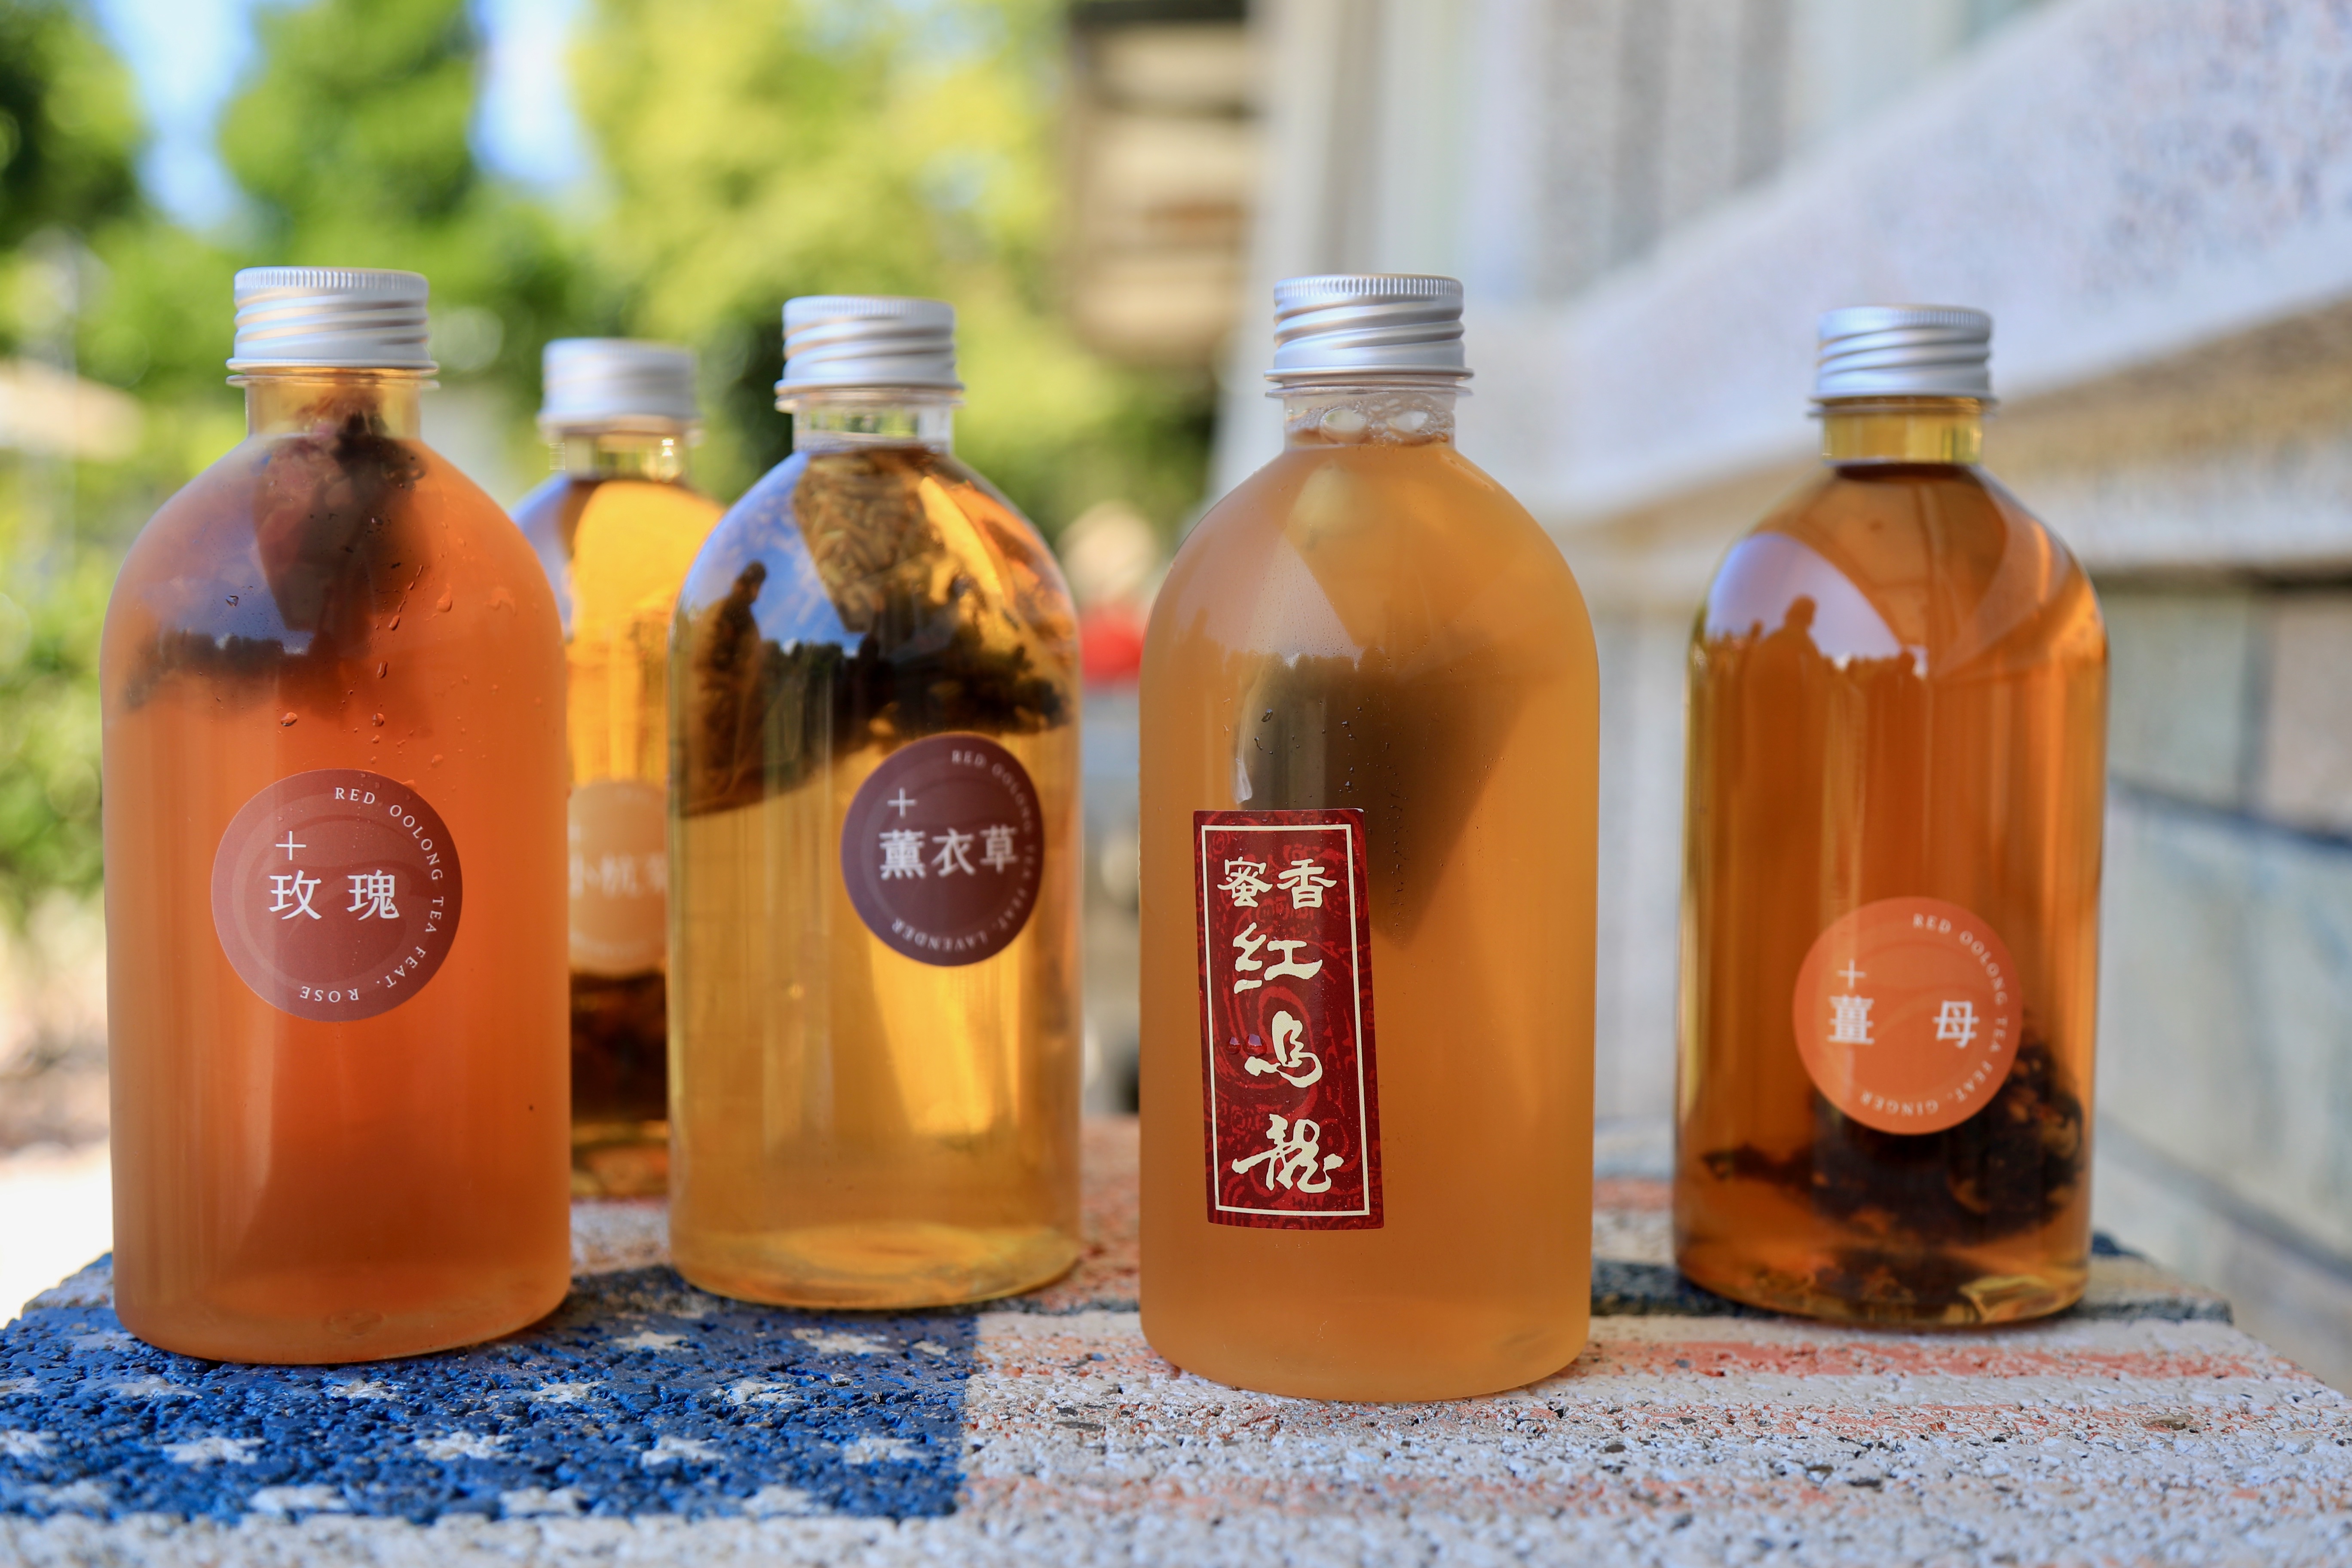 碧蘿園開發多樣天然花果紅烏龍茶飲，冷泡香氣十足且售價平實，很受年輕族群歡迎。